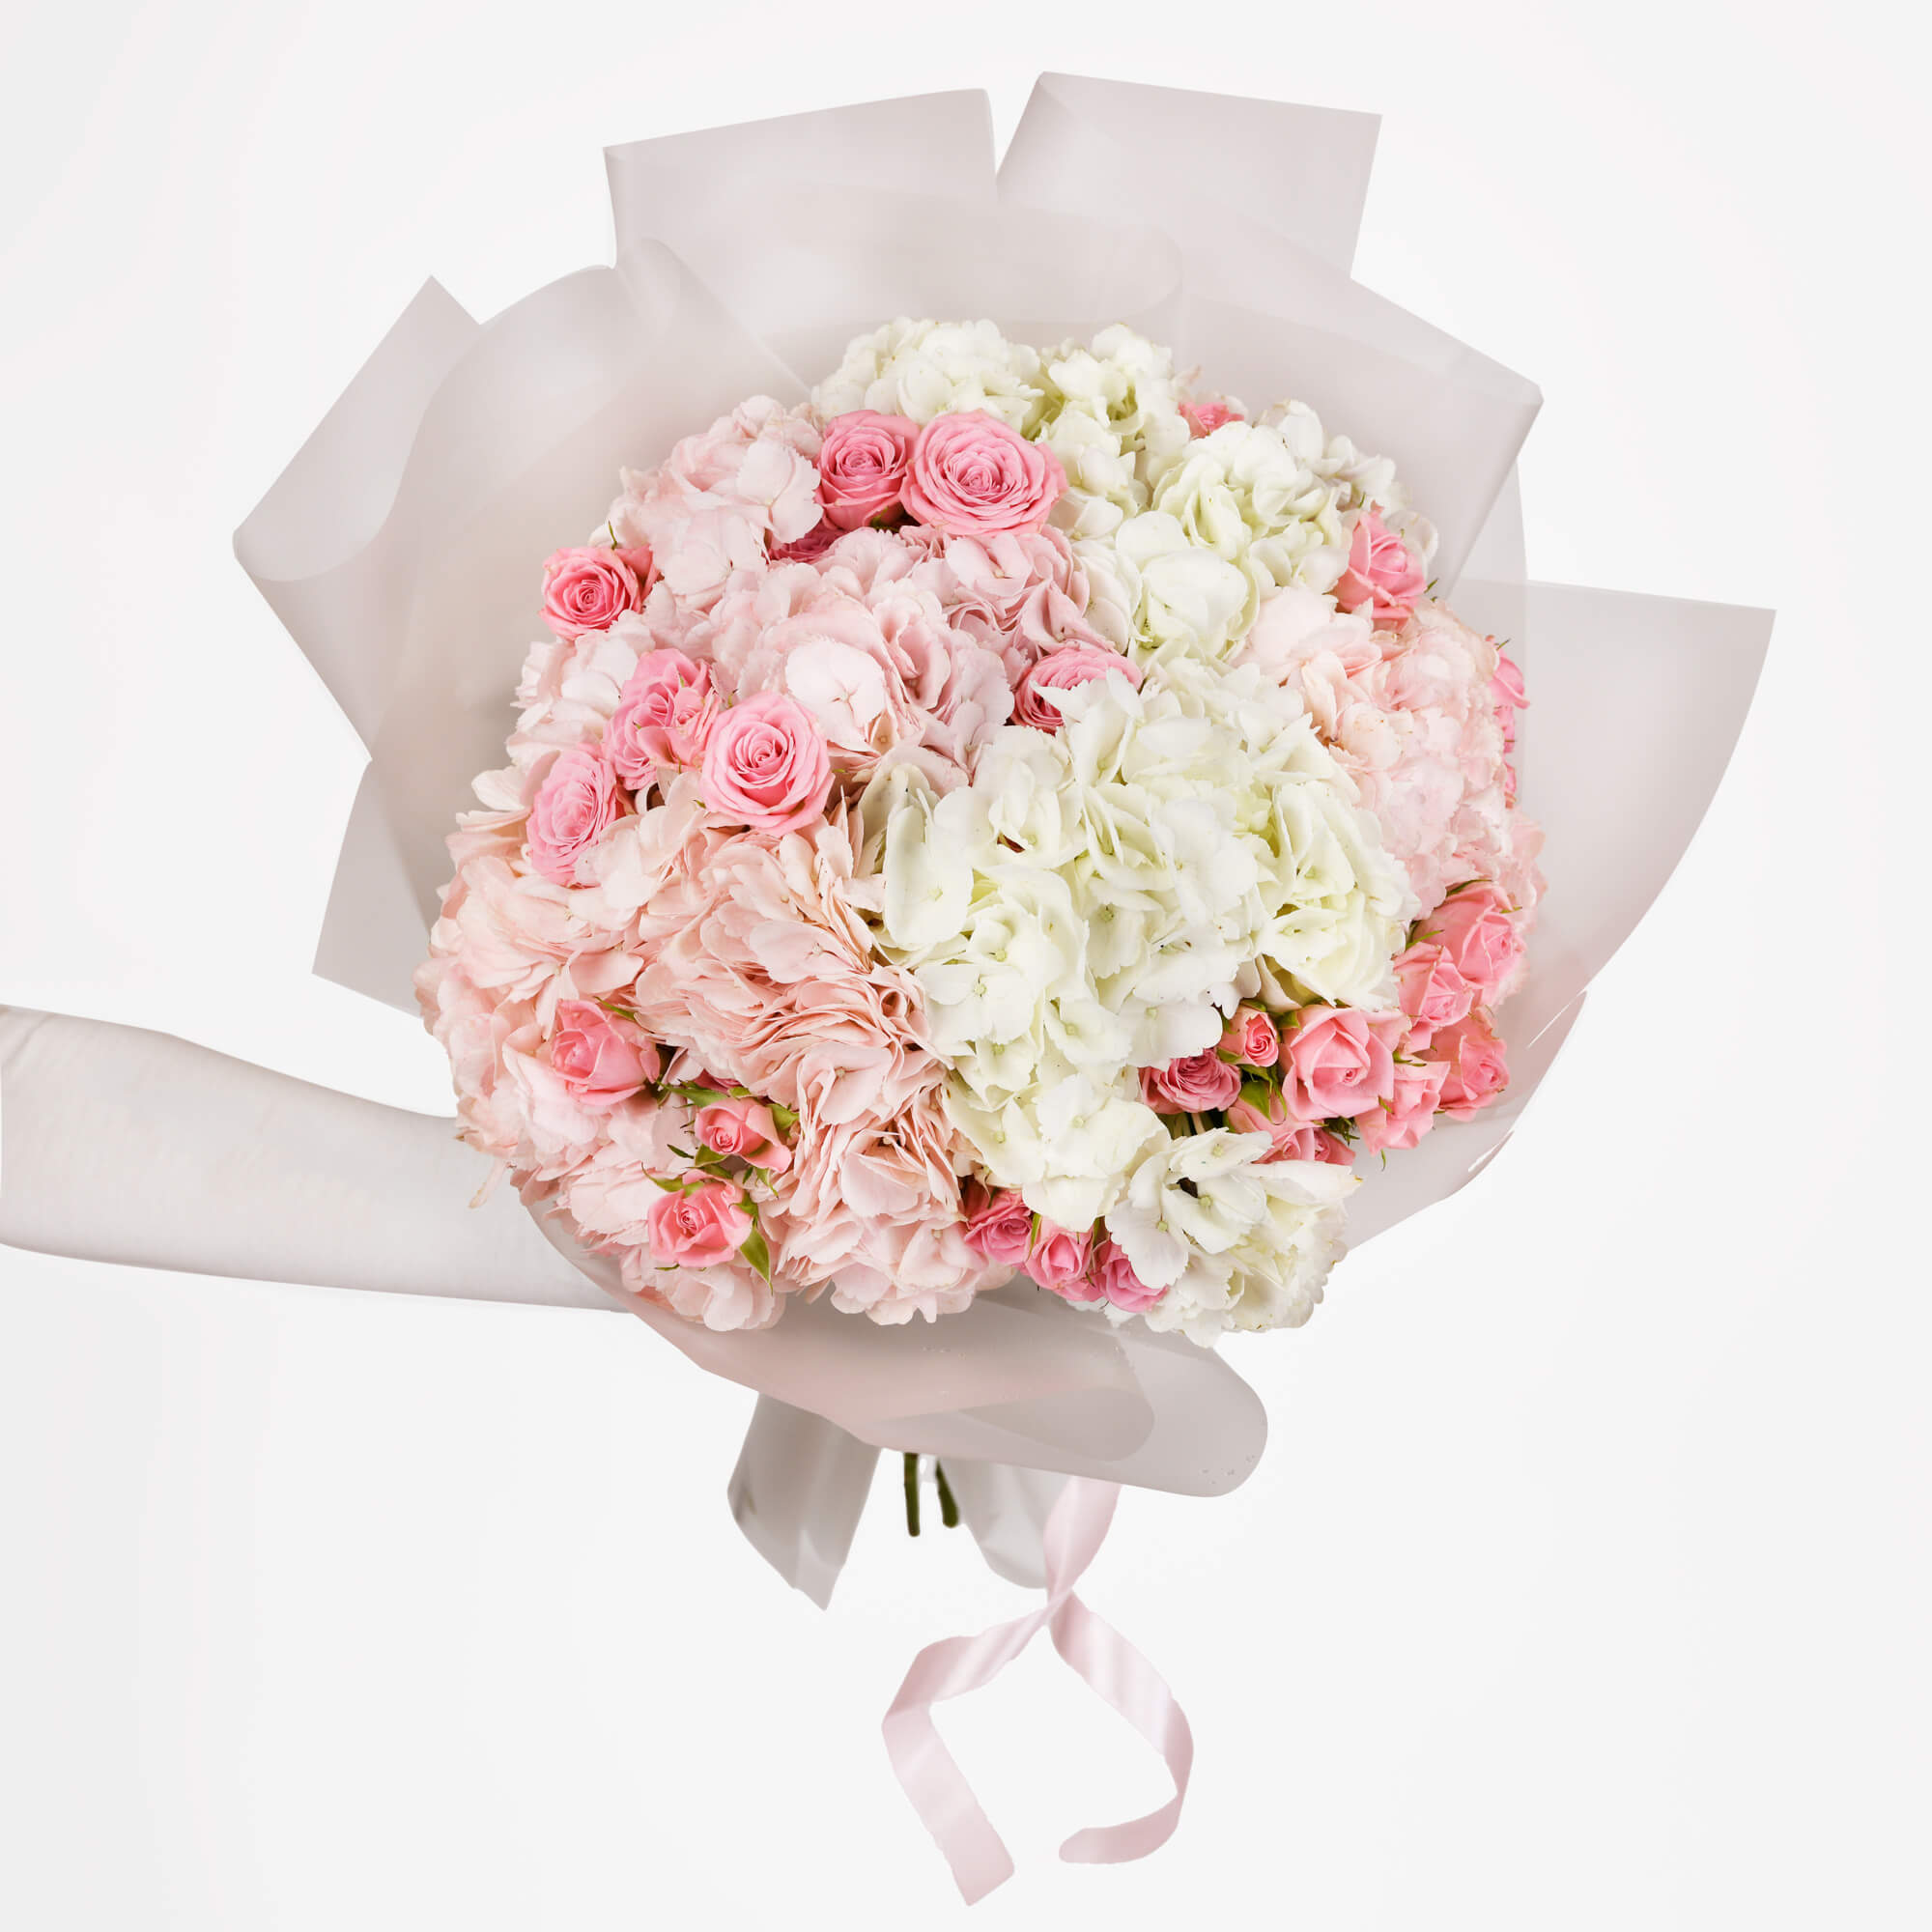 Buchet hortensii albe si roz, 1